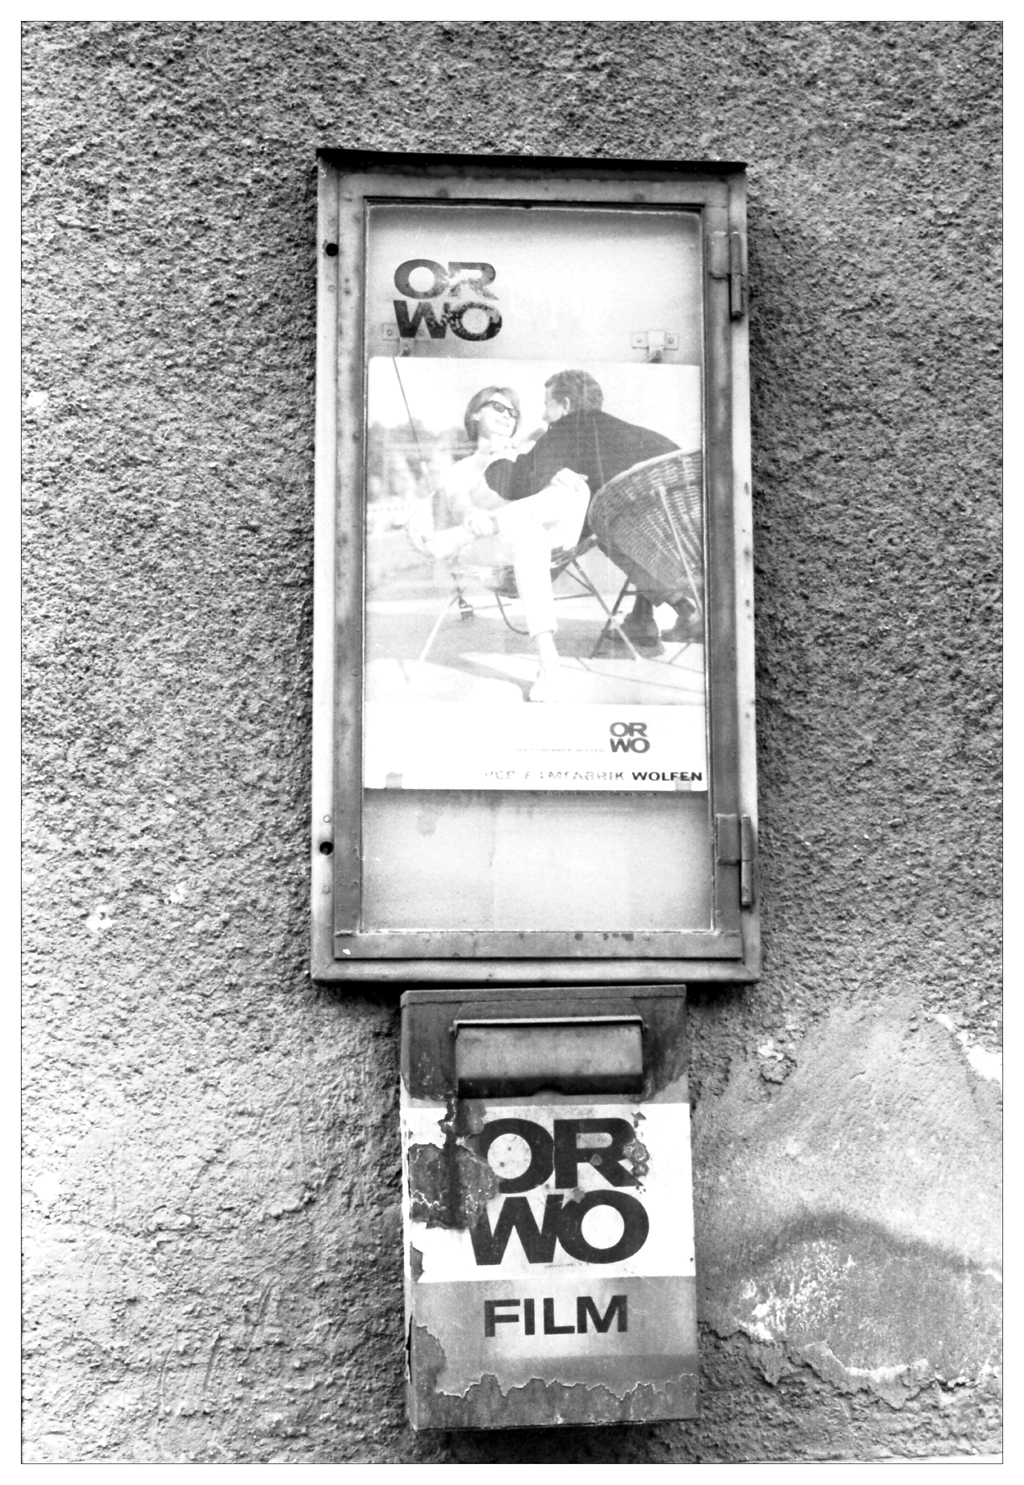 1984-berlin-orwofassade-3